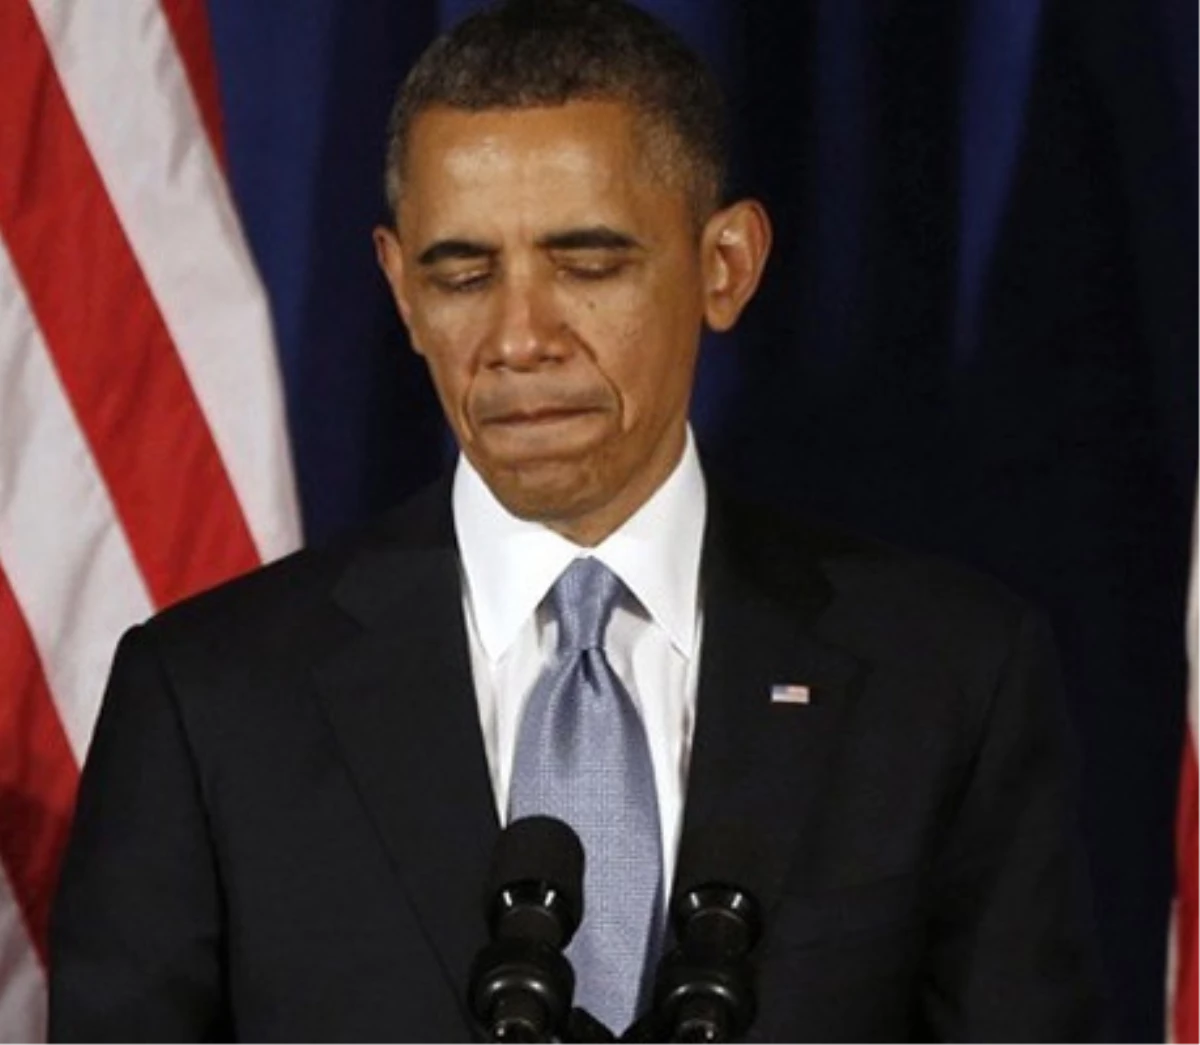 ABD Başkanı Obama "Soykırım" İfadesini Kullanmadı